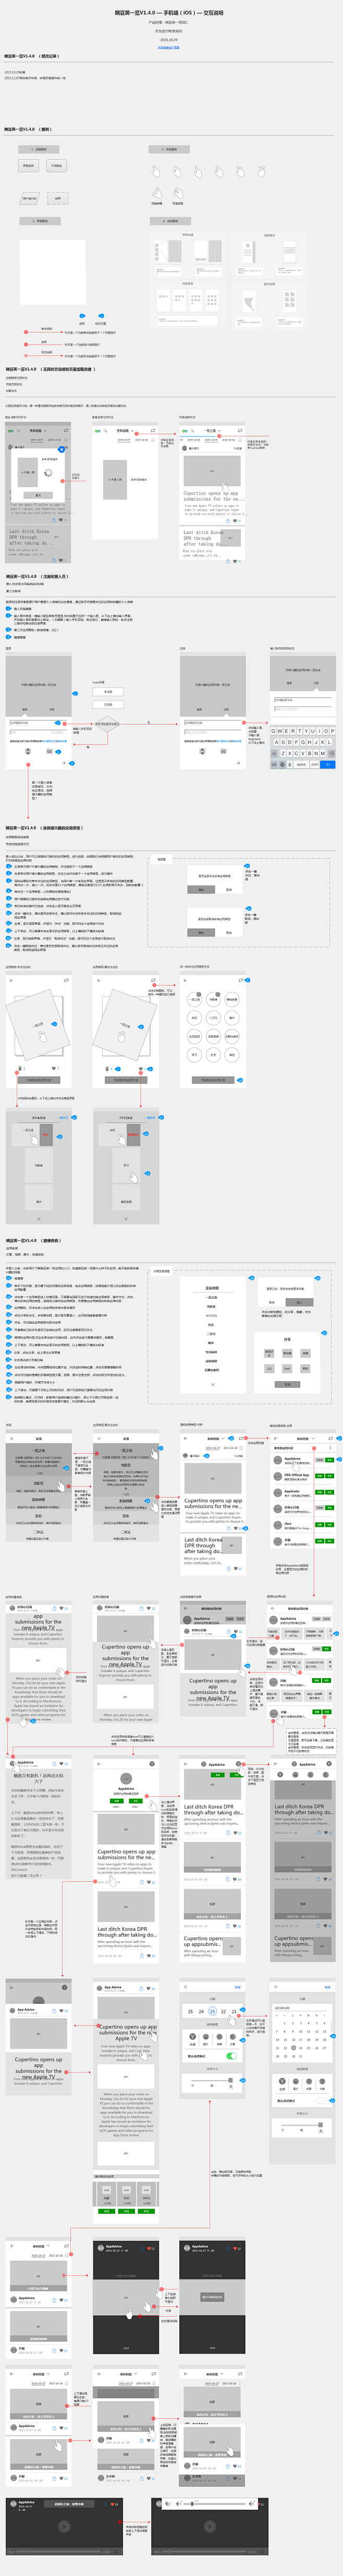 豌豆荚一览V1.4.0交互文档设计思路及...